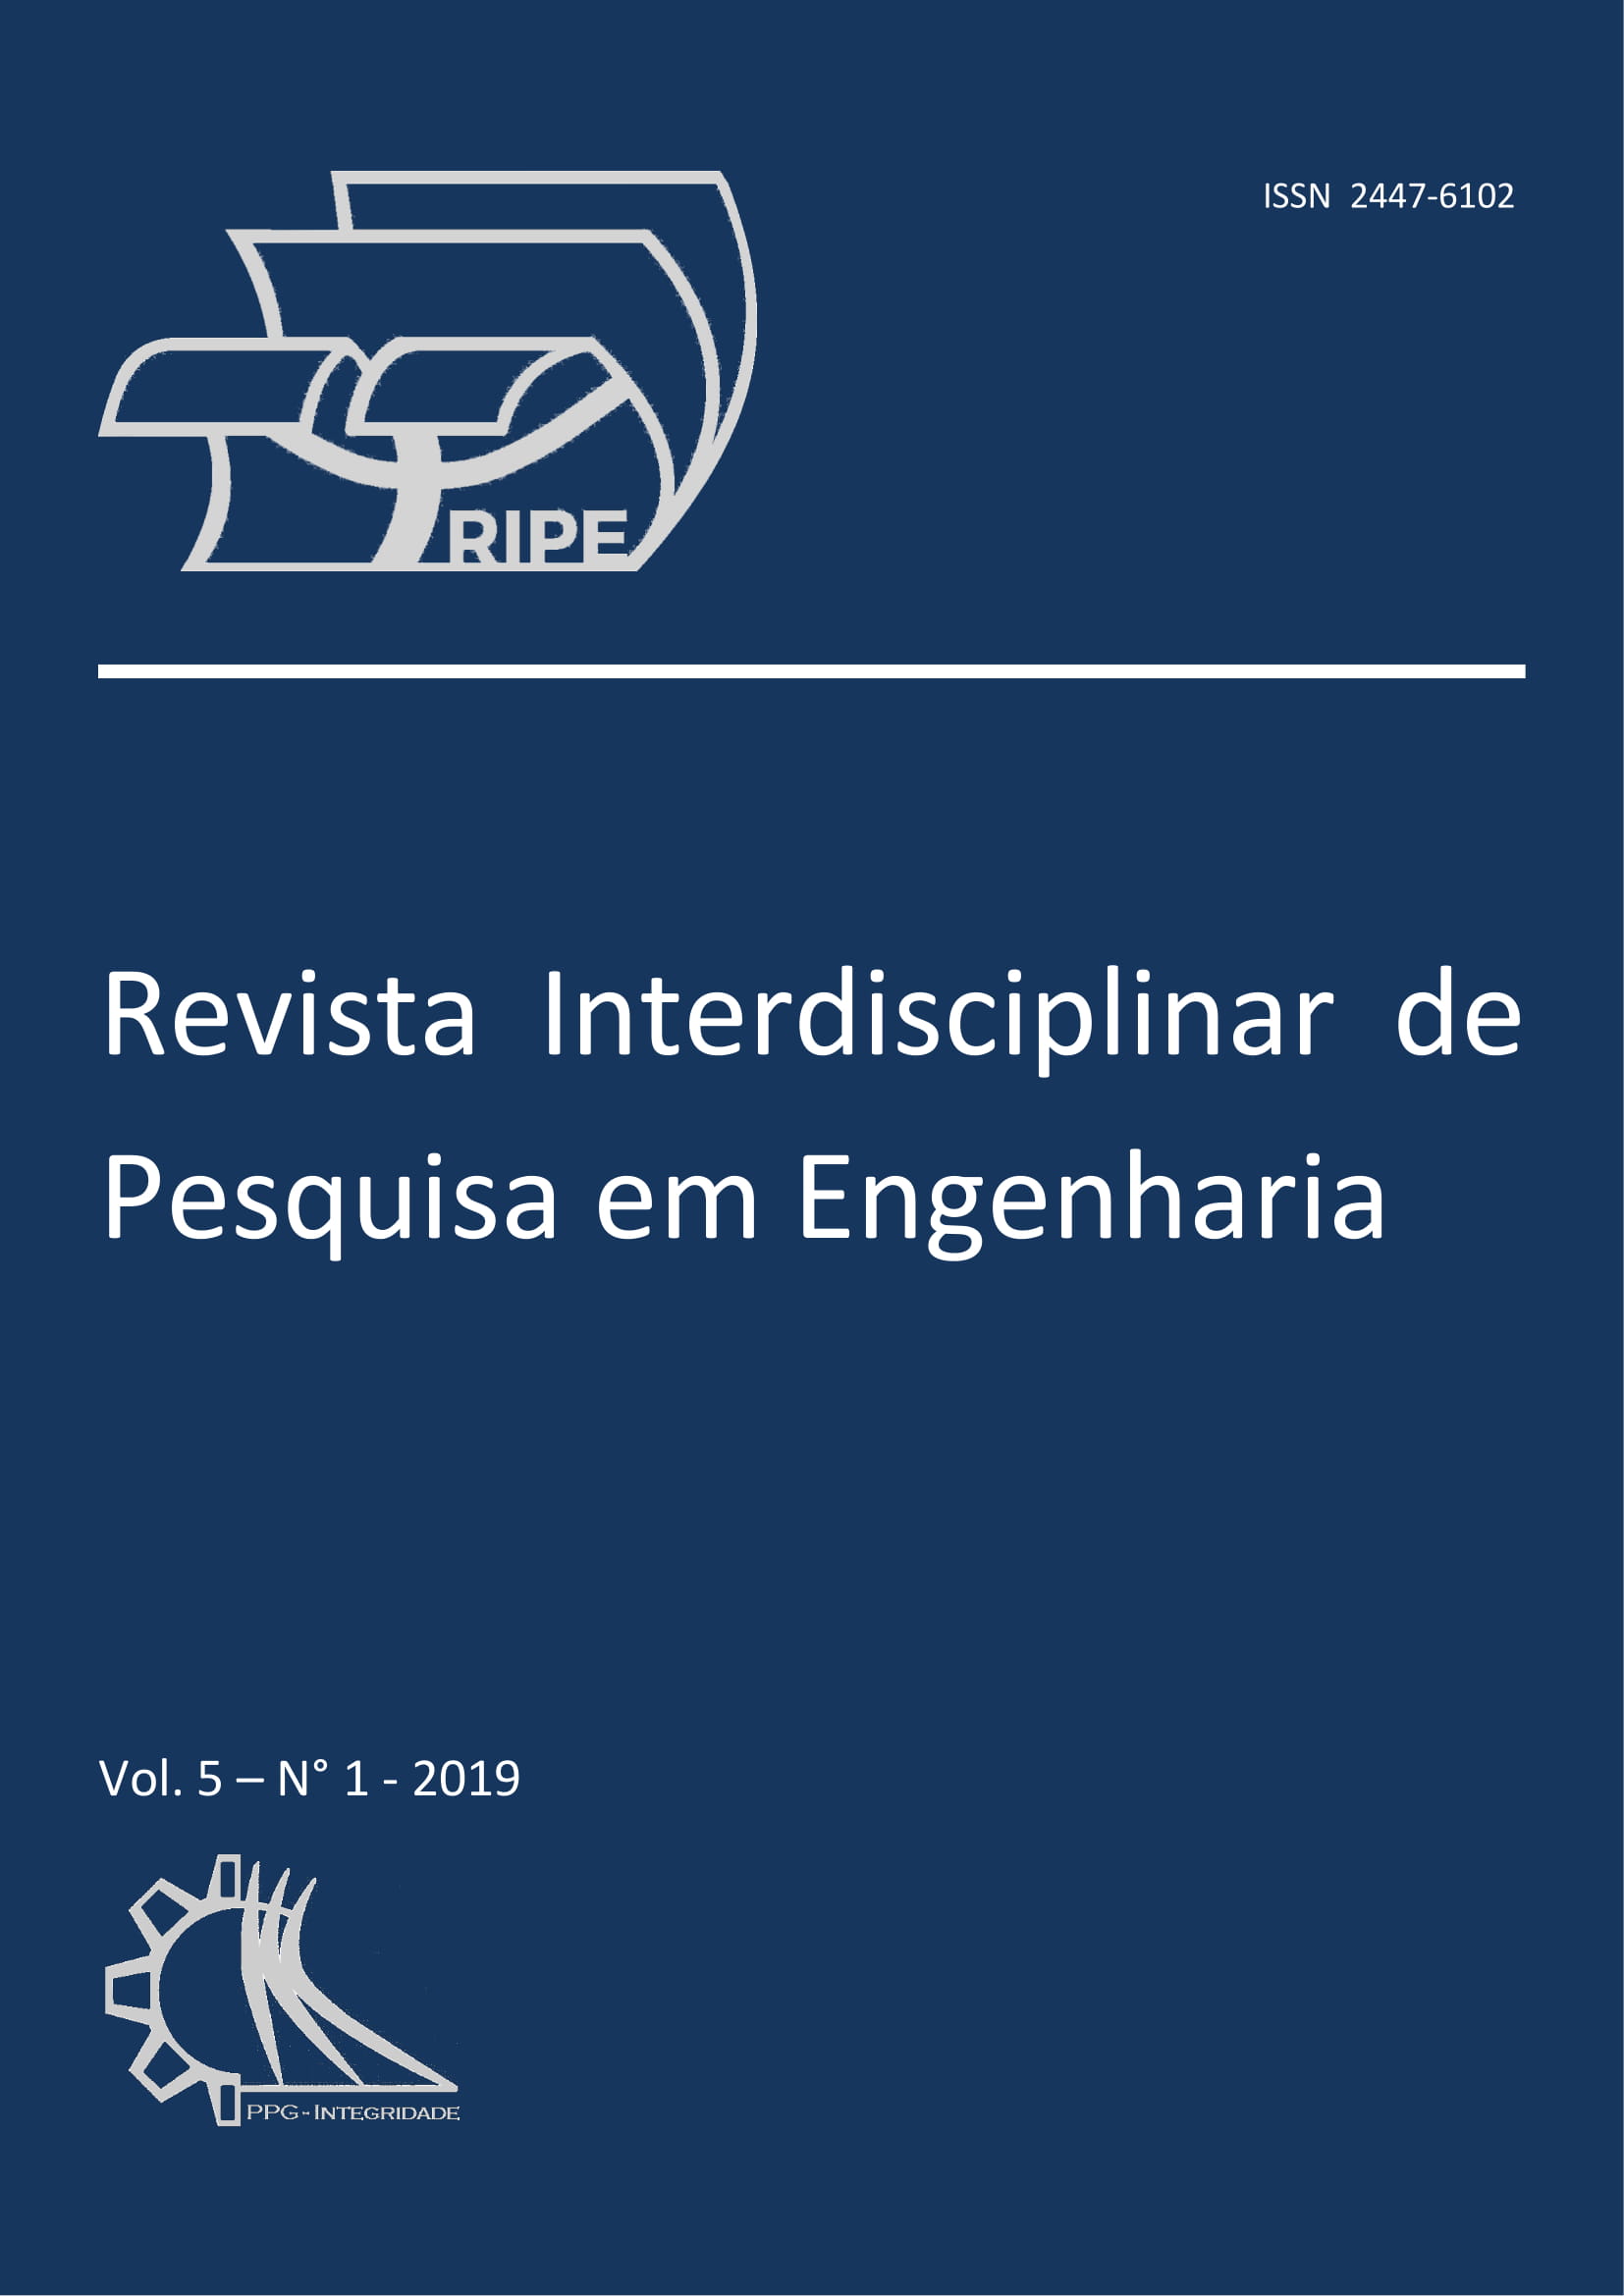 					Visualizar v. 5 n. 1 (2019): Revista Interdisciplinar de Pesquisa em Engenharia - RIPE
				